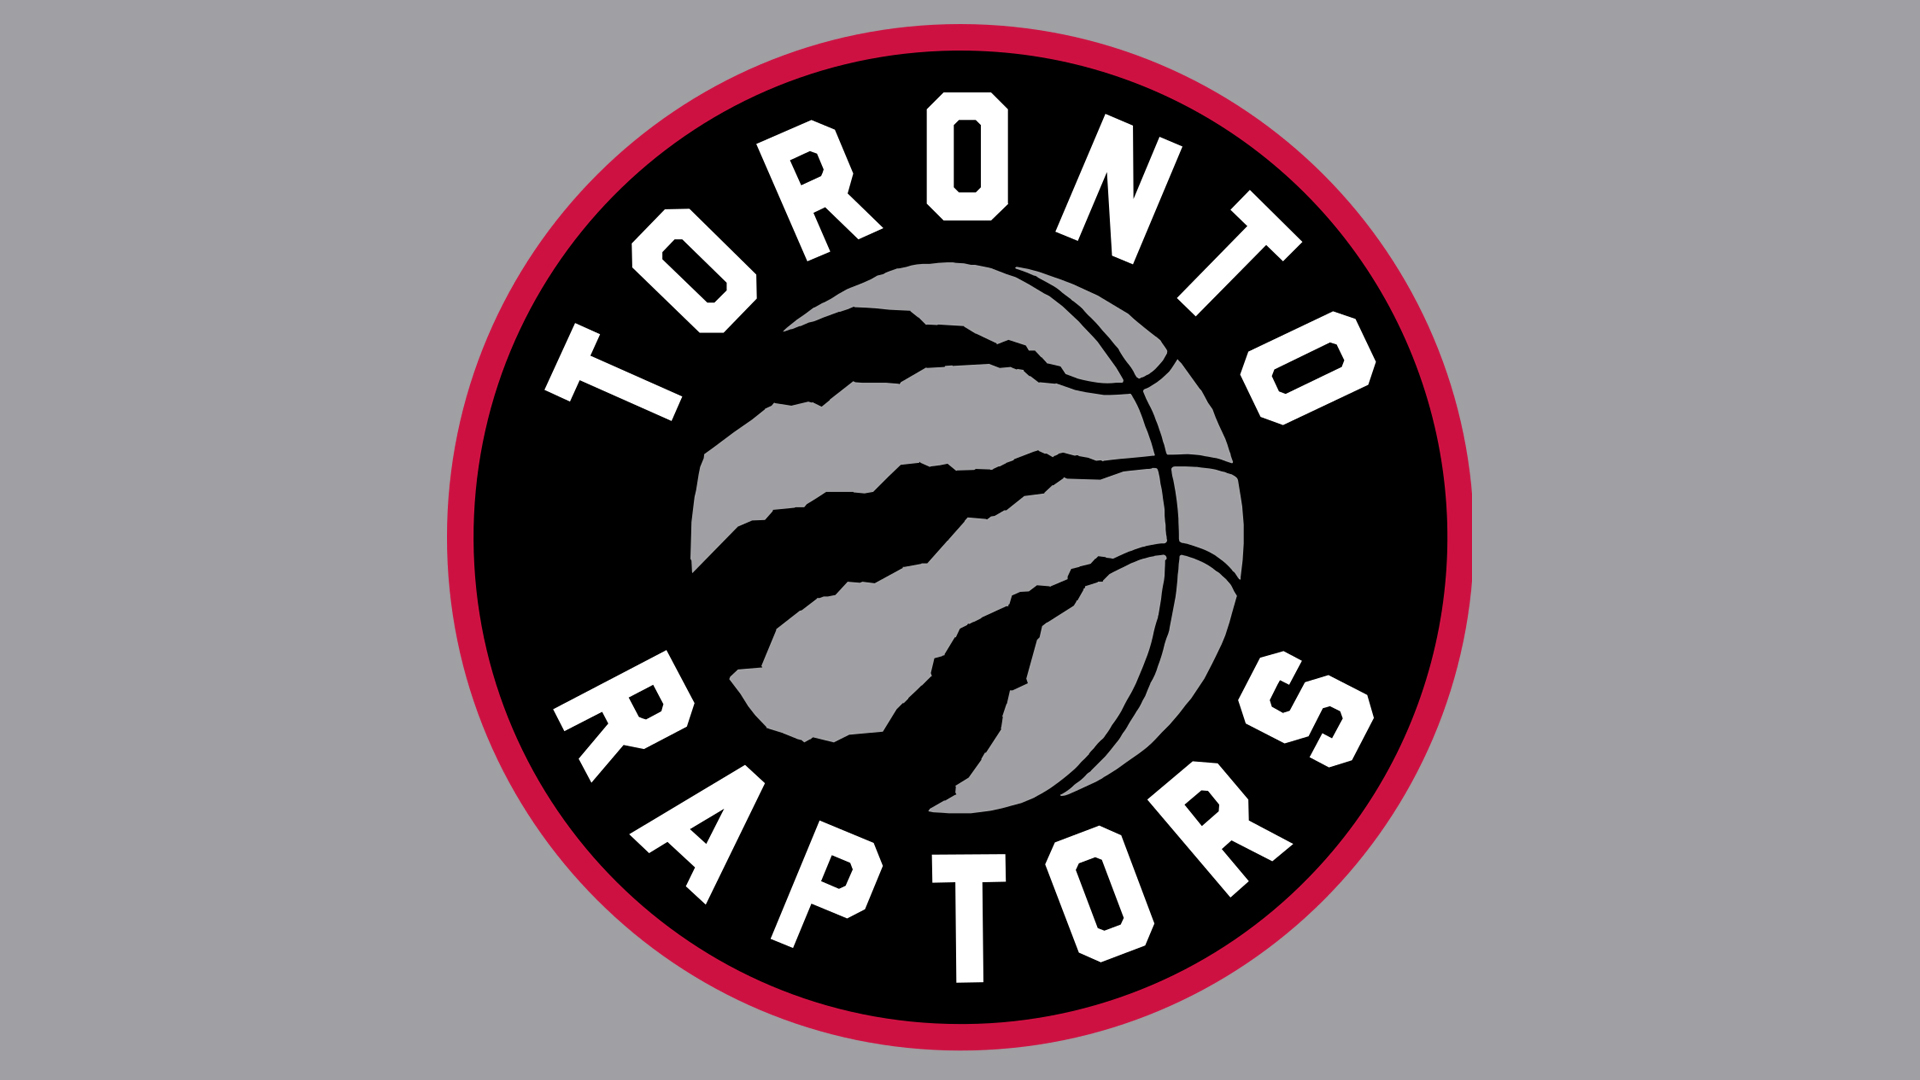 Descarga gratuita de fondo de pantalla para móvil de Baloncesto, Logo, Nba, Deporte, Rapaces De Toronto.